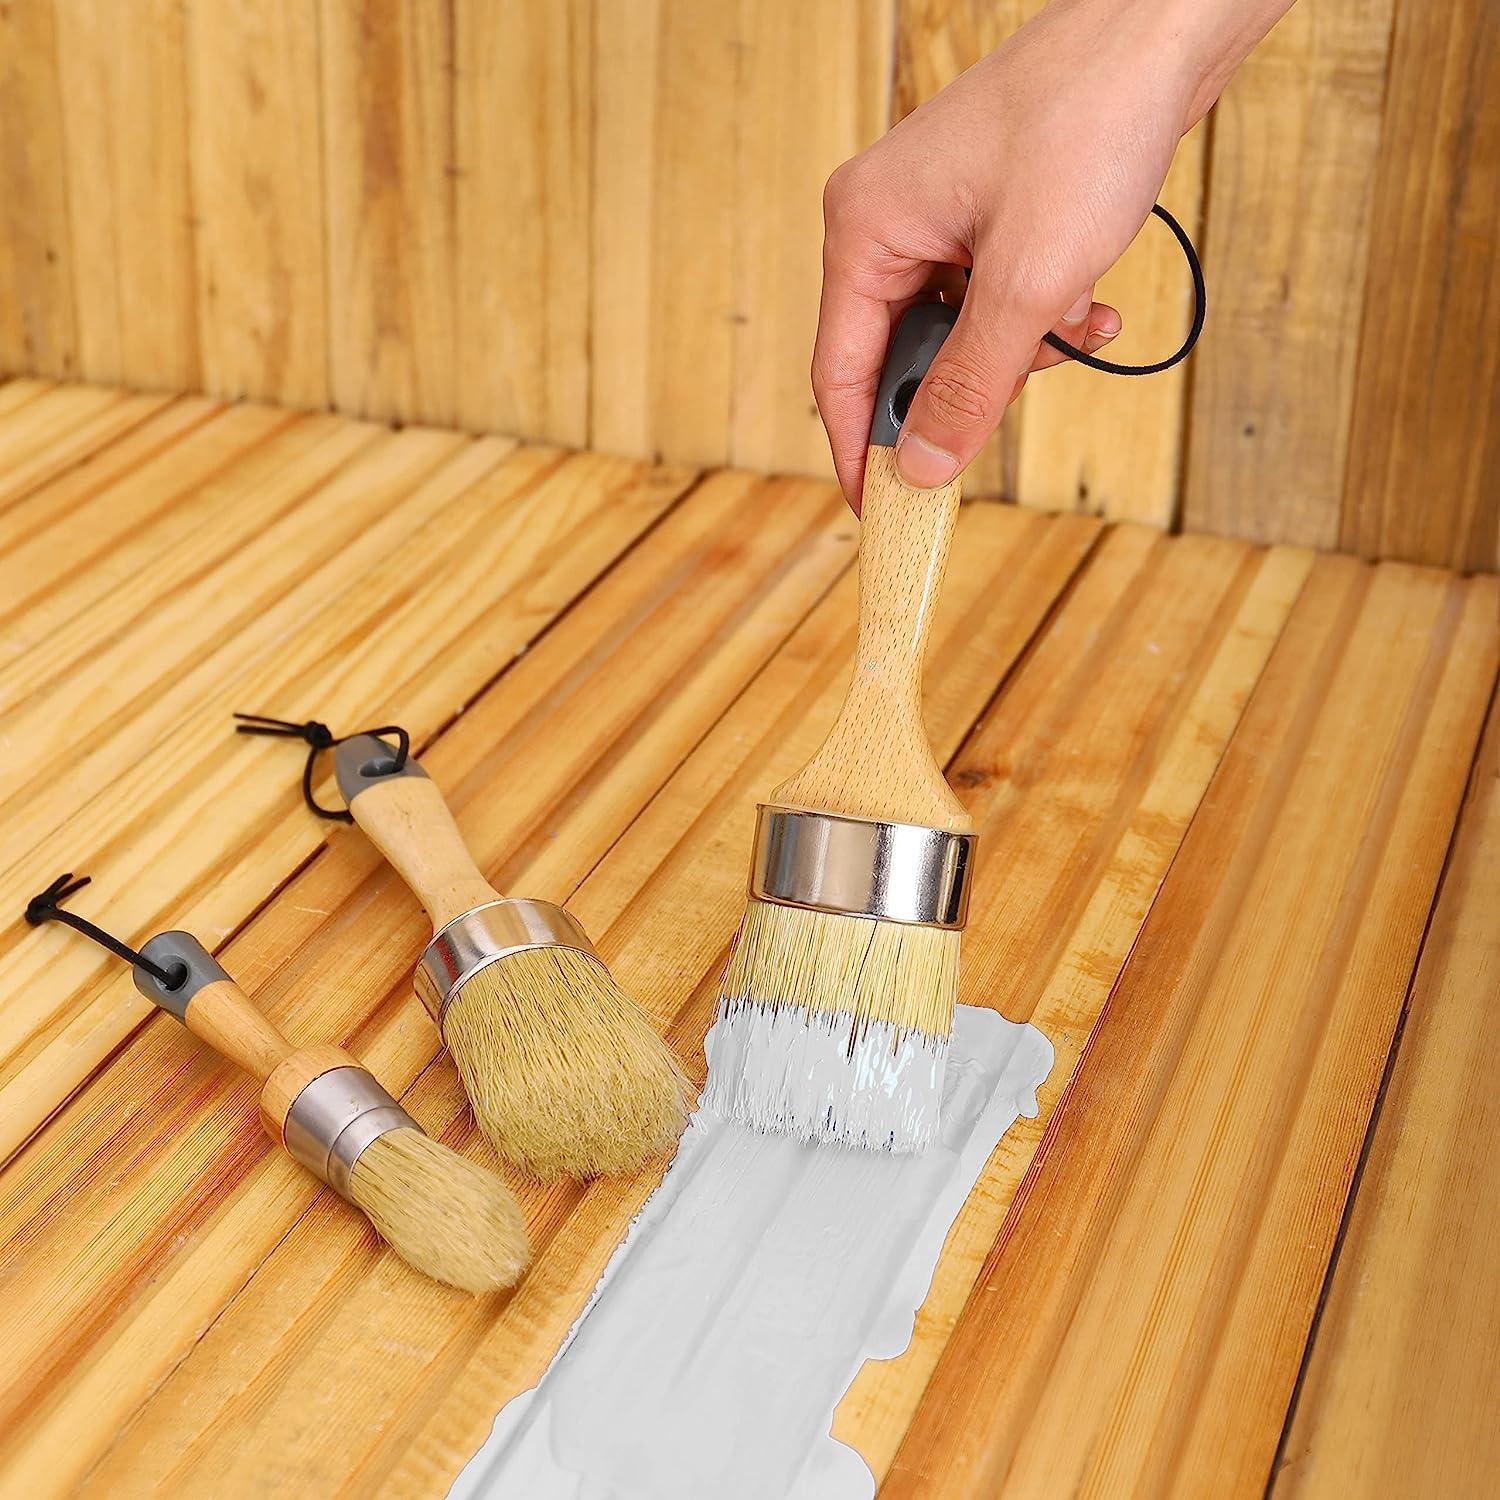 Professional 3' Decorative Paint Brush Sets - China Bristle Paint Brush,  Wooden Brushes